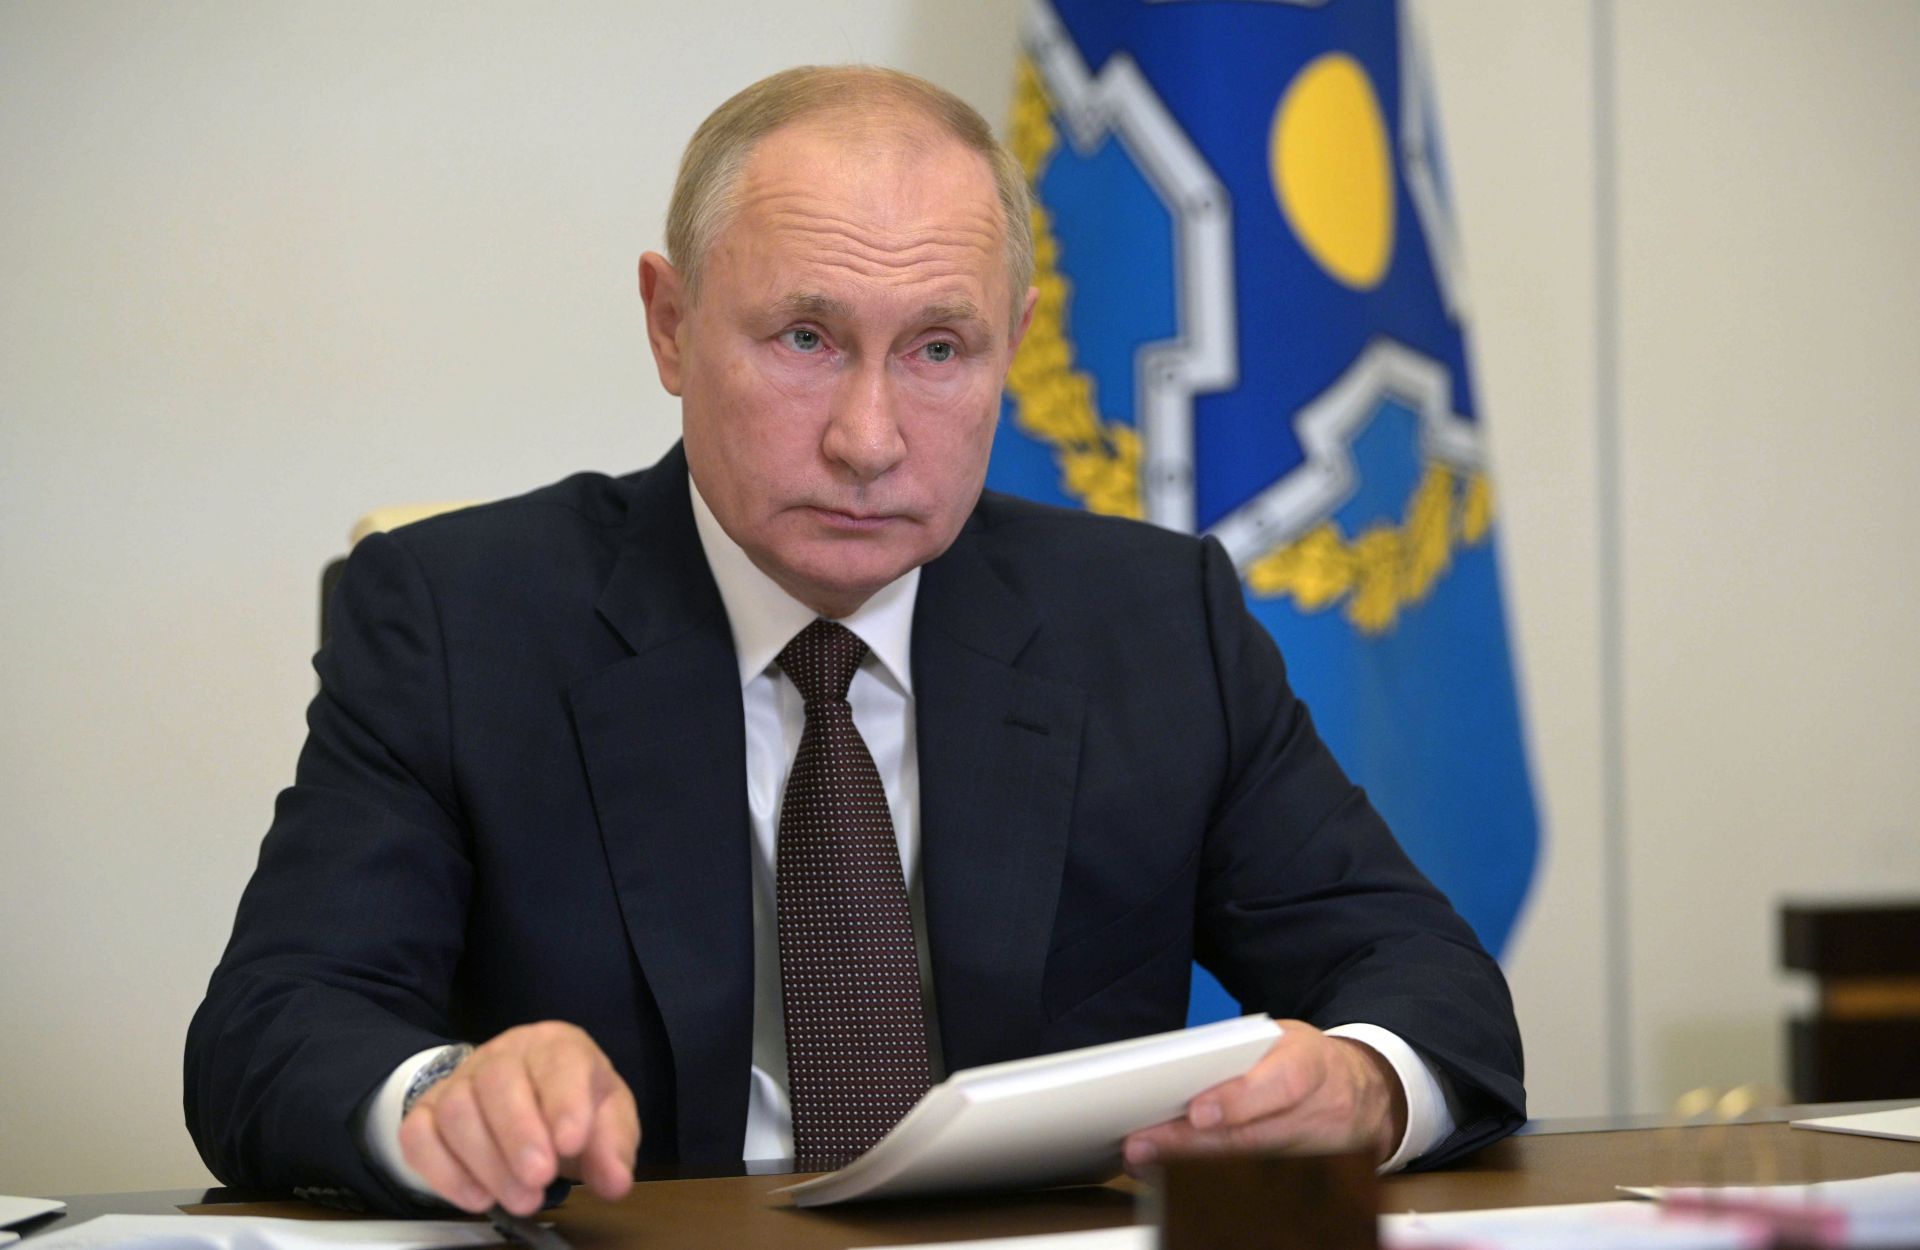 Руският президент Владимир Путин присъства на заседание на Организацията на договора за колективна сигурност (ОДКБ) чрез видеоконференция в резиденция Ново-Огарьово извън Москва